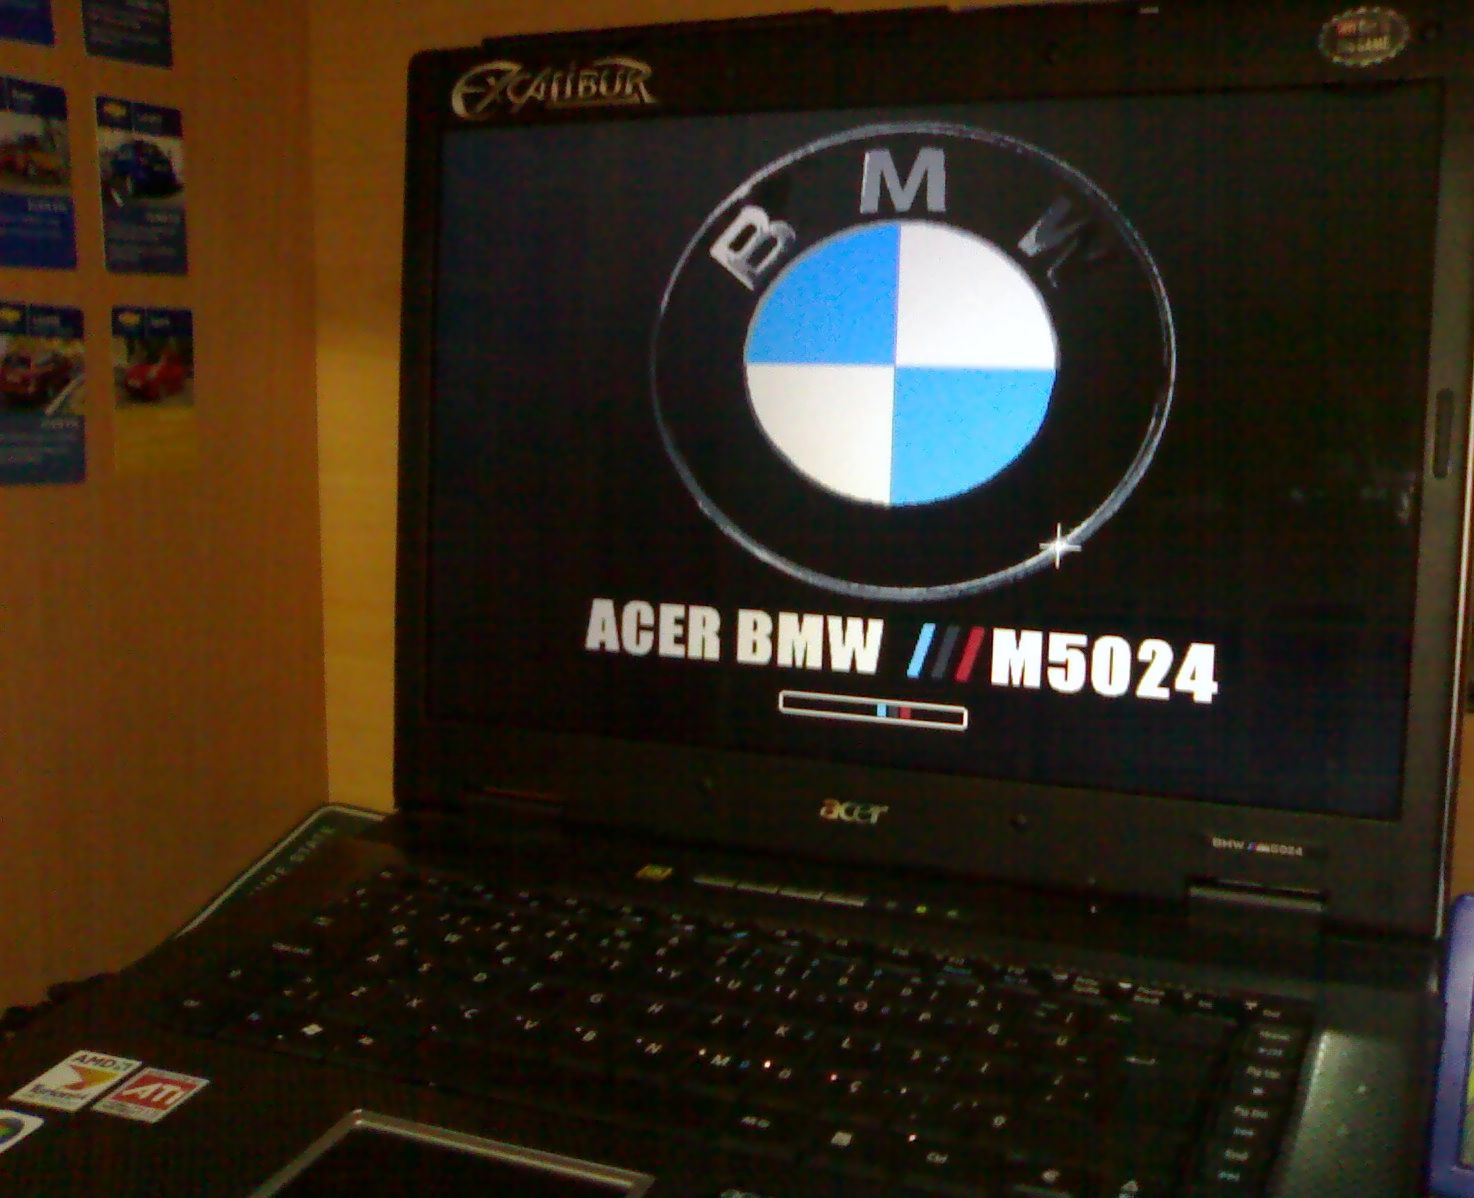  .::ACER BMW ///M5024 (Laptop Carbon Modding)::.